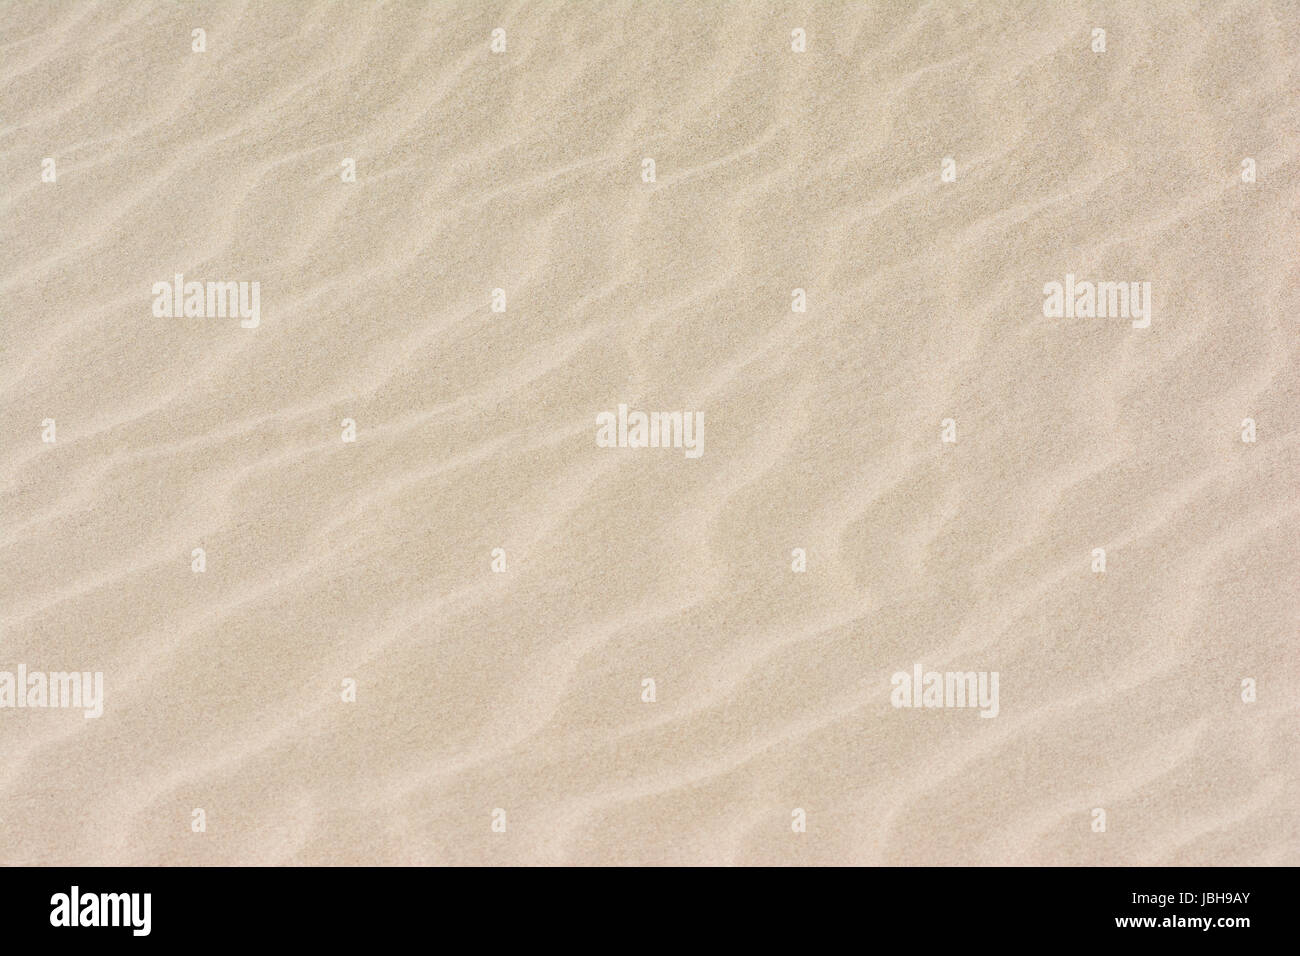 Bildfüllende Sandfläche als Hintergrund. Stock Photo